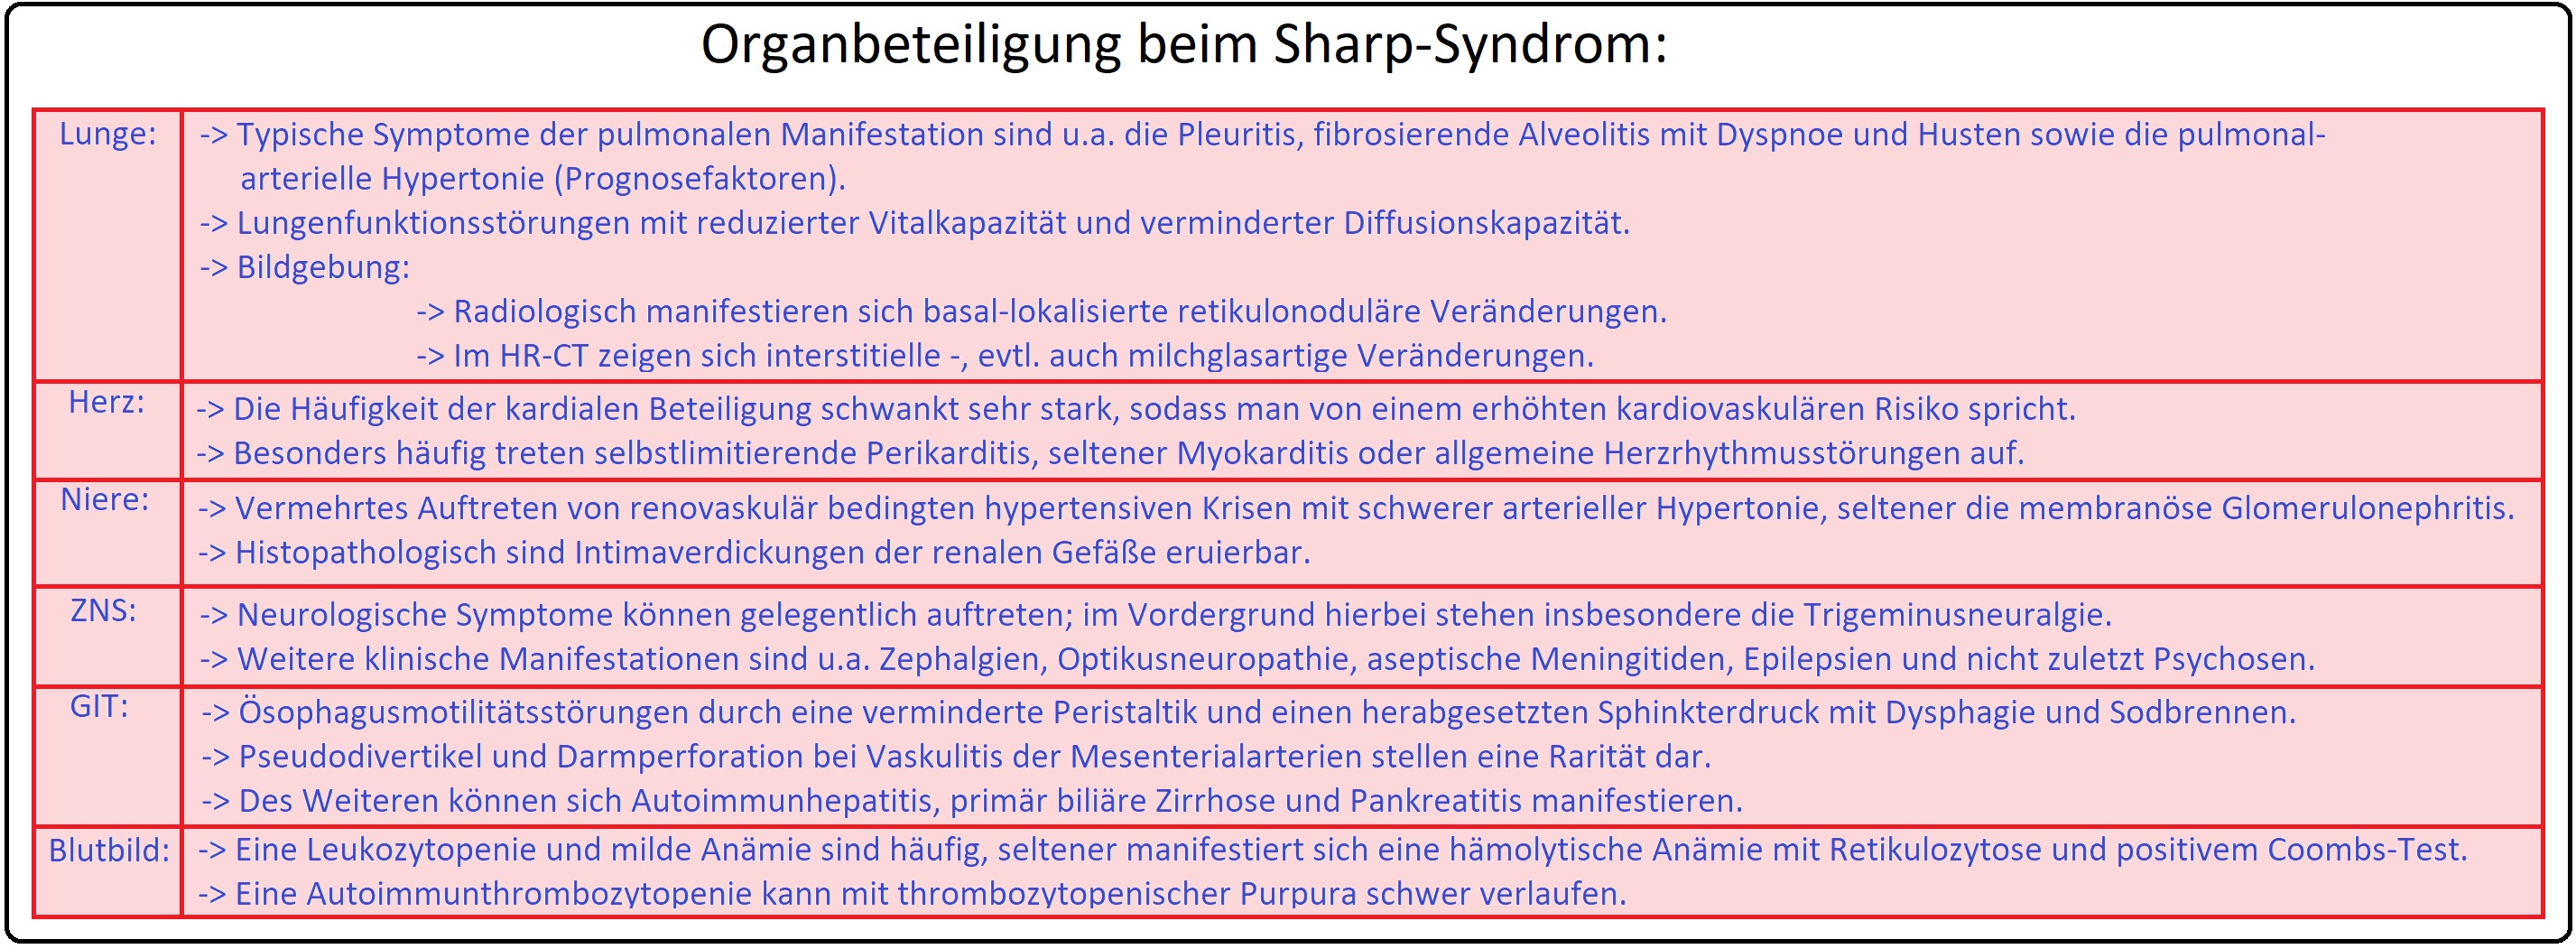 614 Organbeteiligung beim Sharp Syndrom